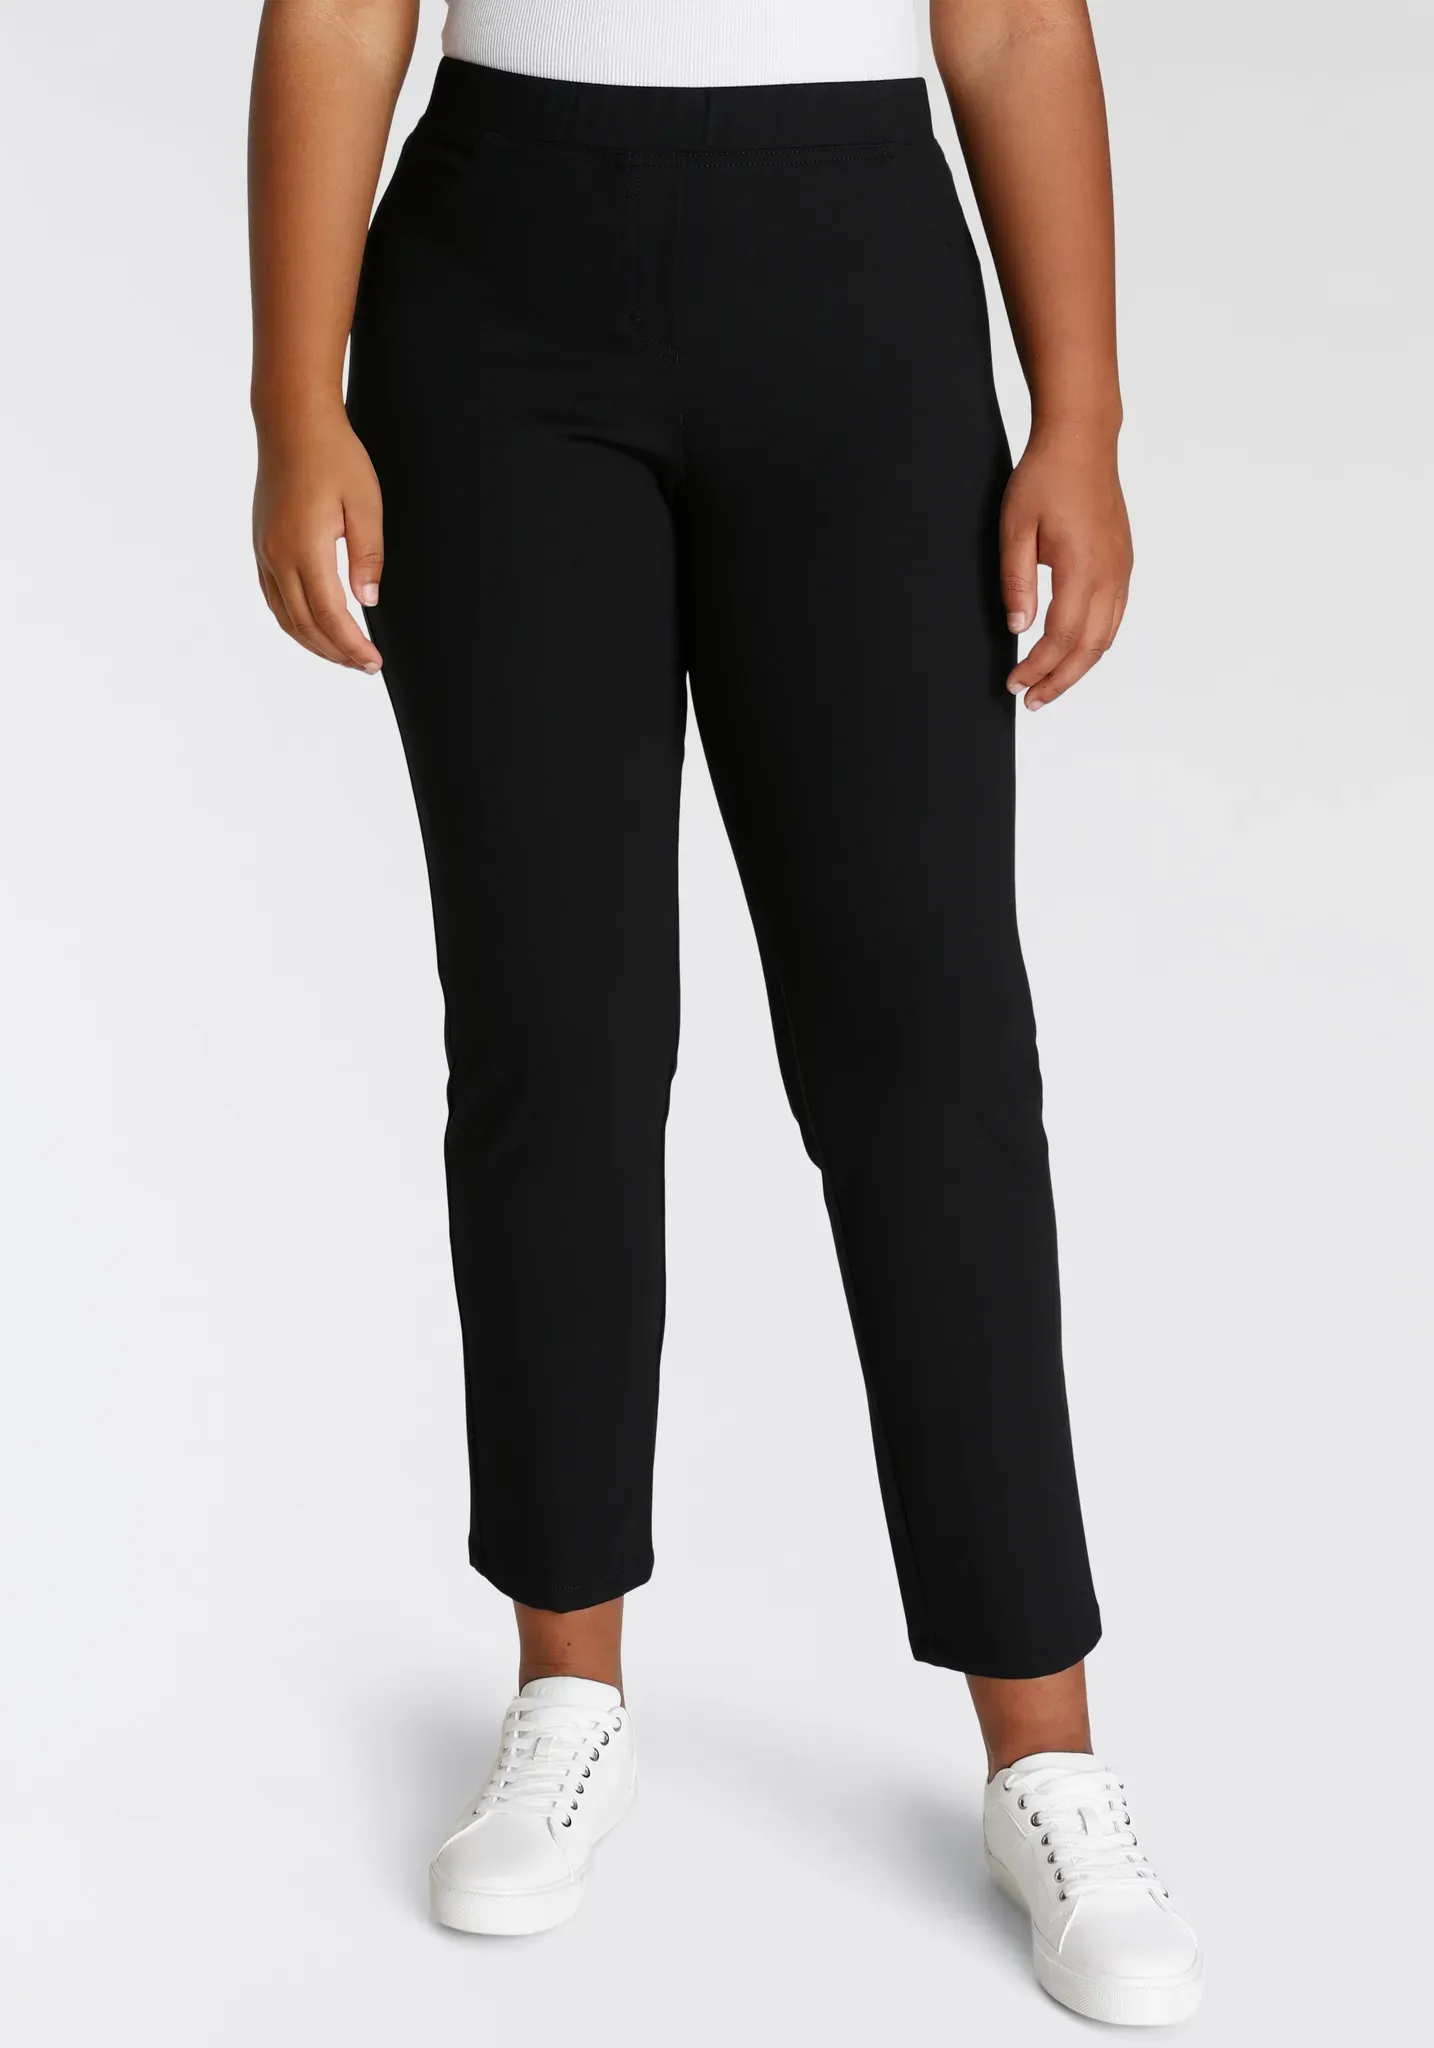 Jerseyhose KJBRAND "Jenny" Gr. 42, N-Gr, schwarz Damen Hosen Jerseyhosen mit elastischem Schlupfbund